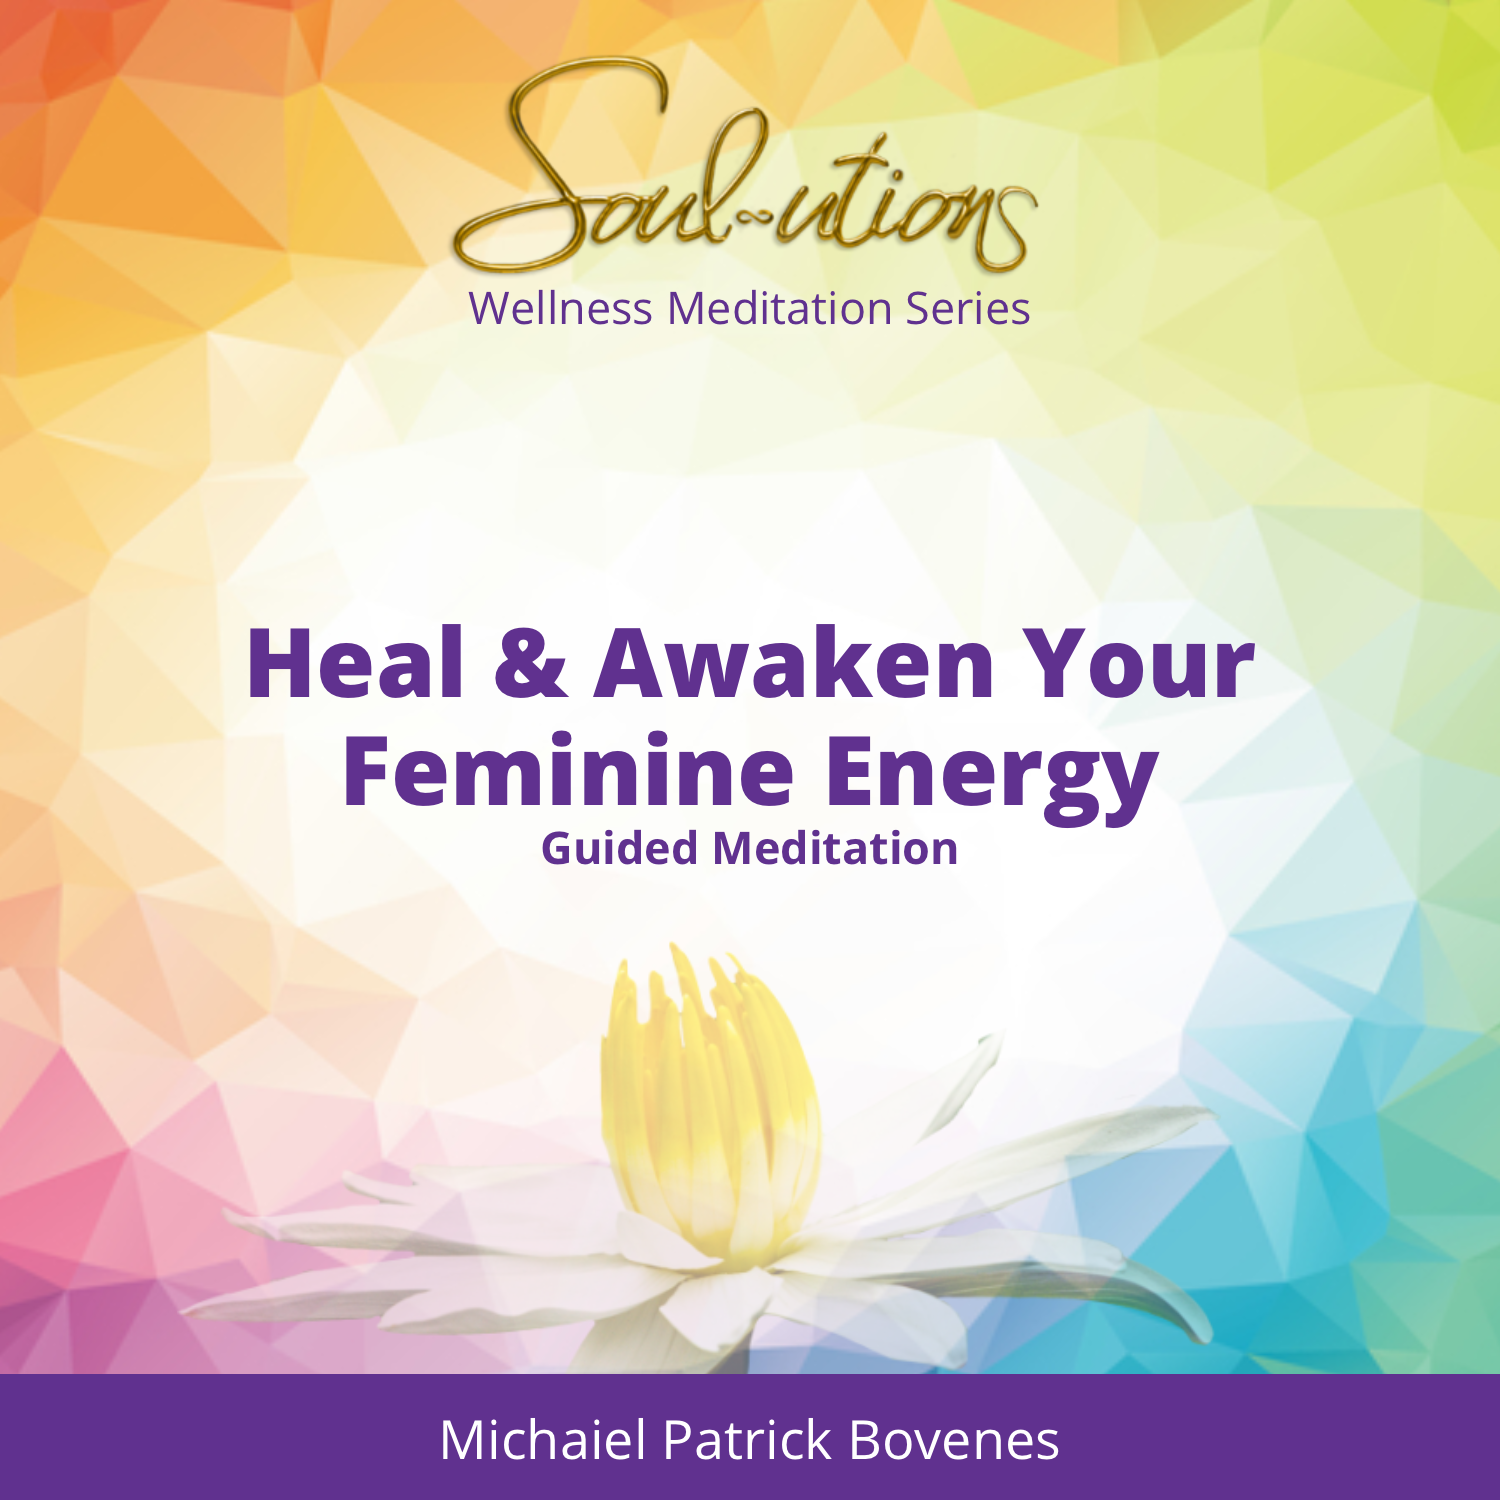 Healing and Awakening Your Feminine Energy - •